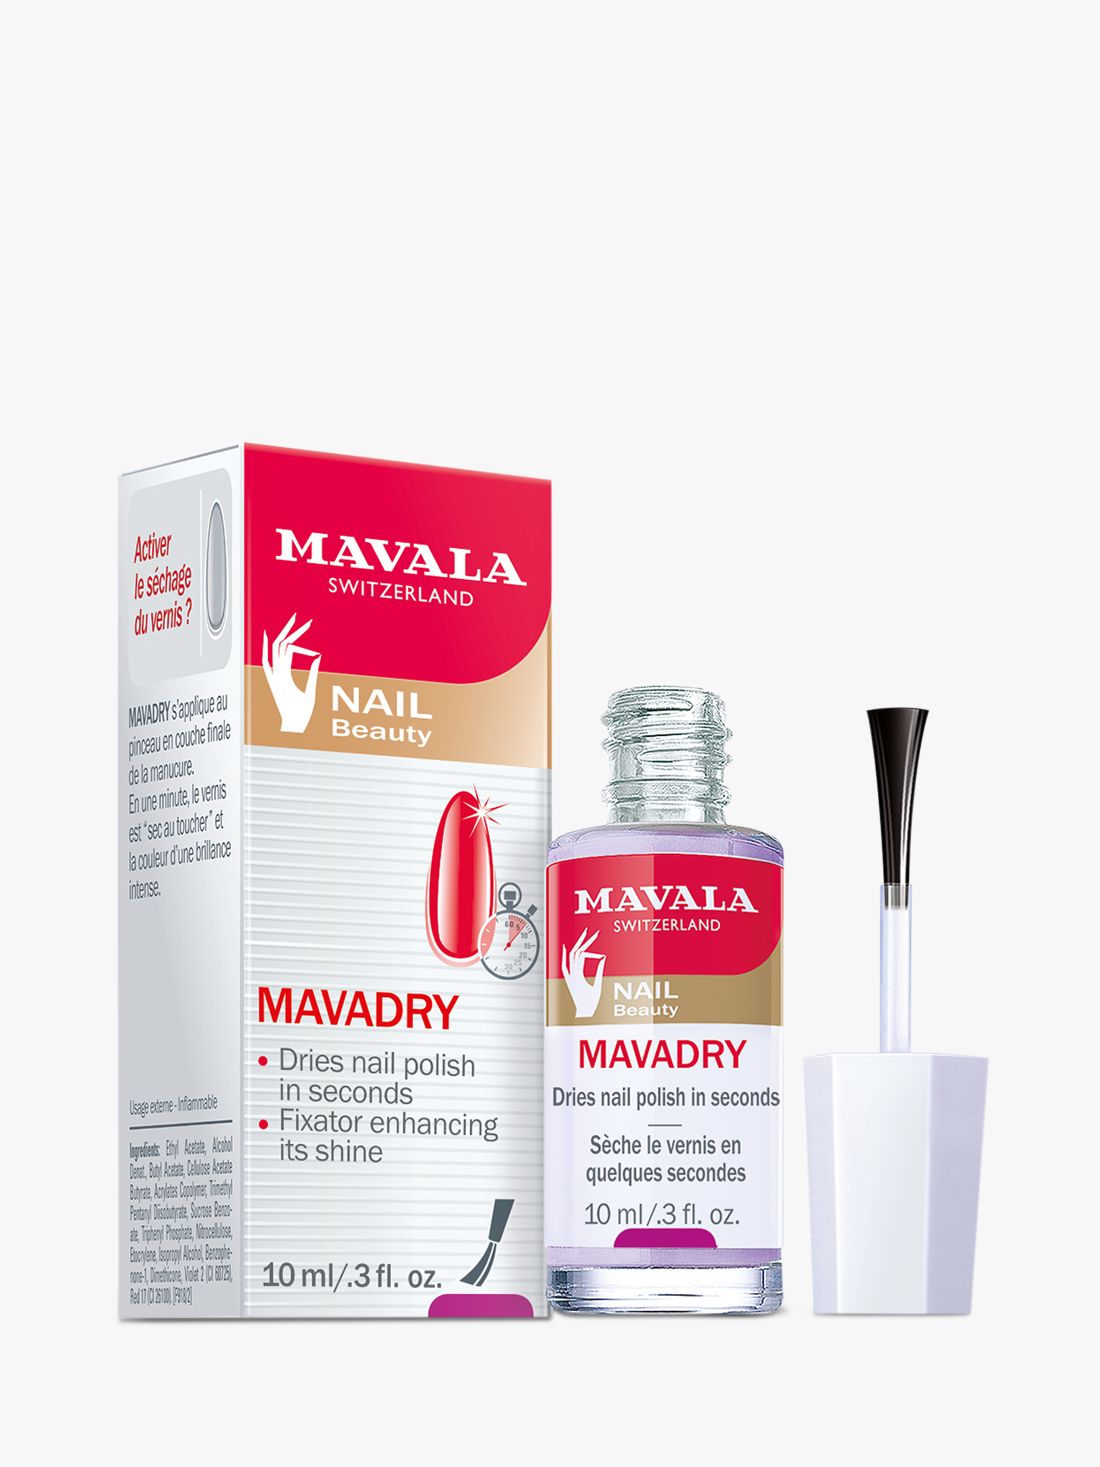 Mavala Mavadry Fast Drying Nail Polish Finish, 10ml